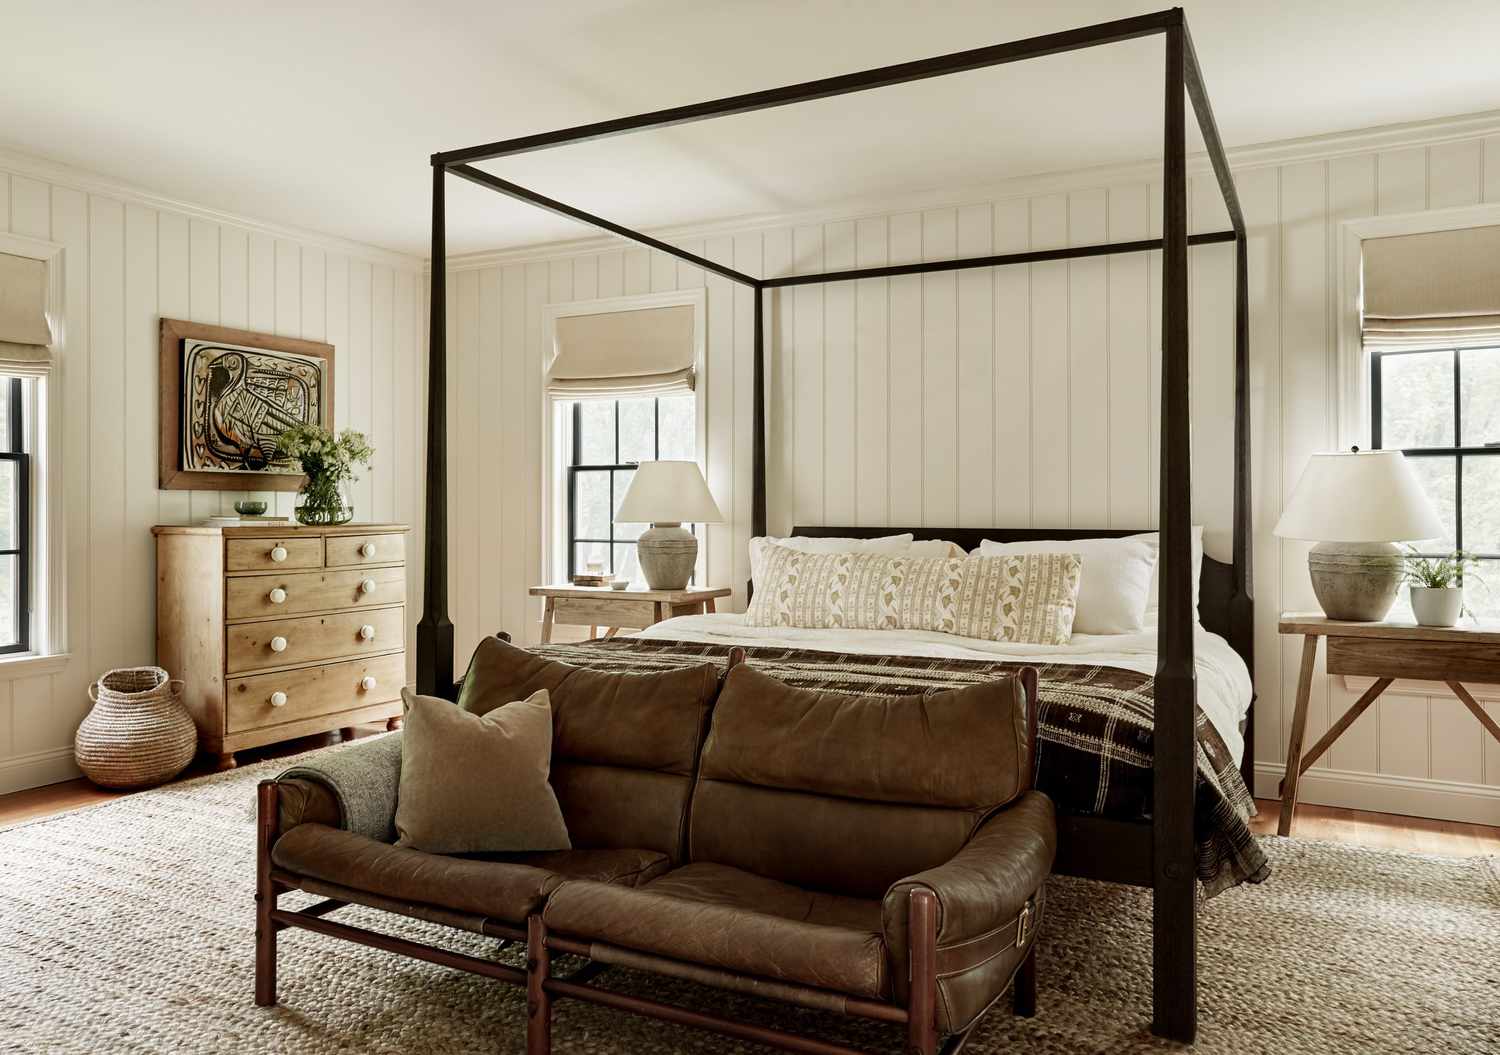 Paredes de shiplap blanco en un dormitorio tradicional con una combinación de colores neutros